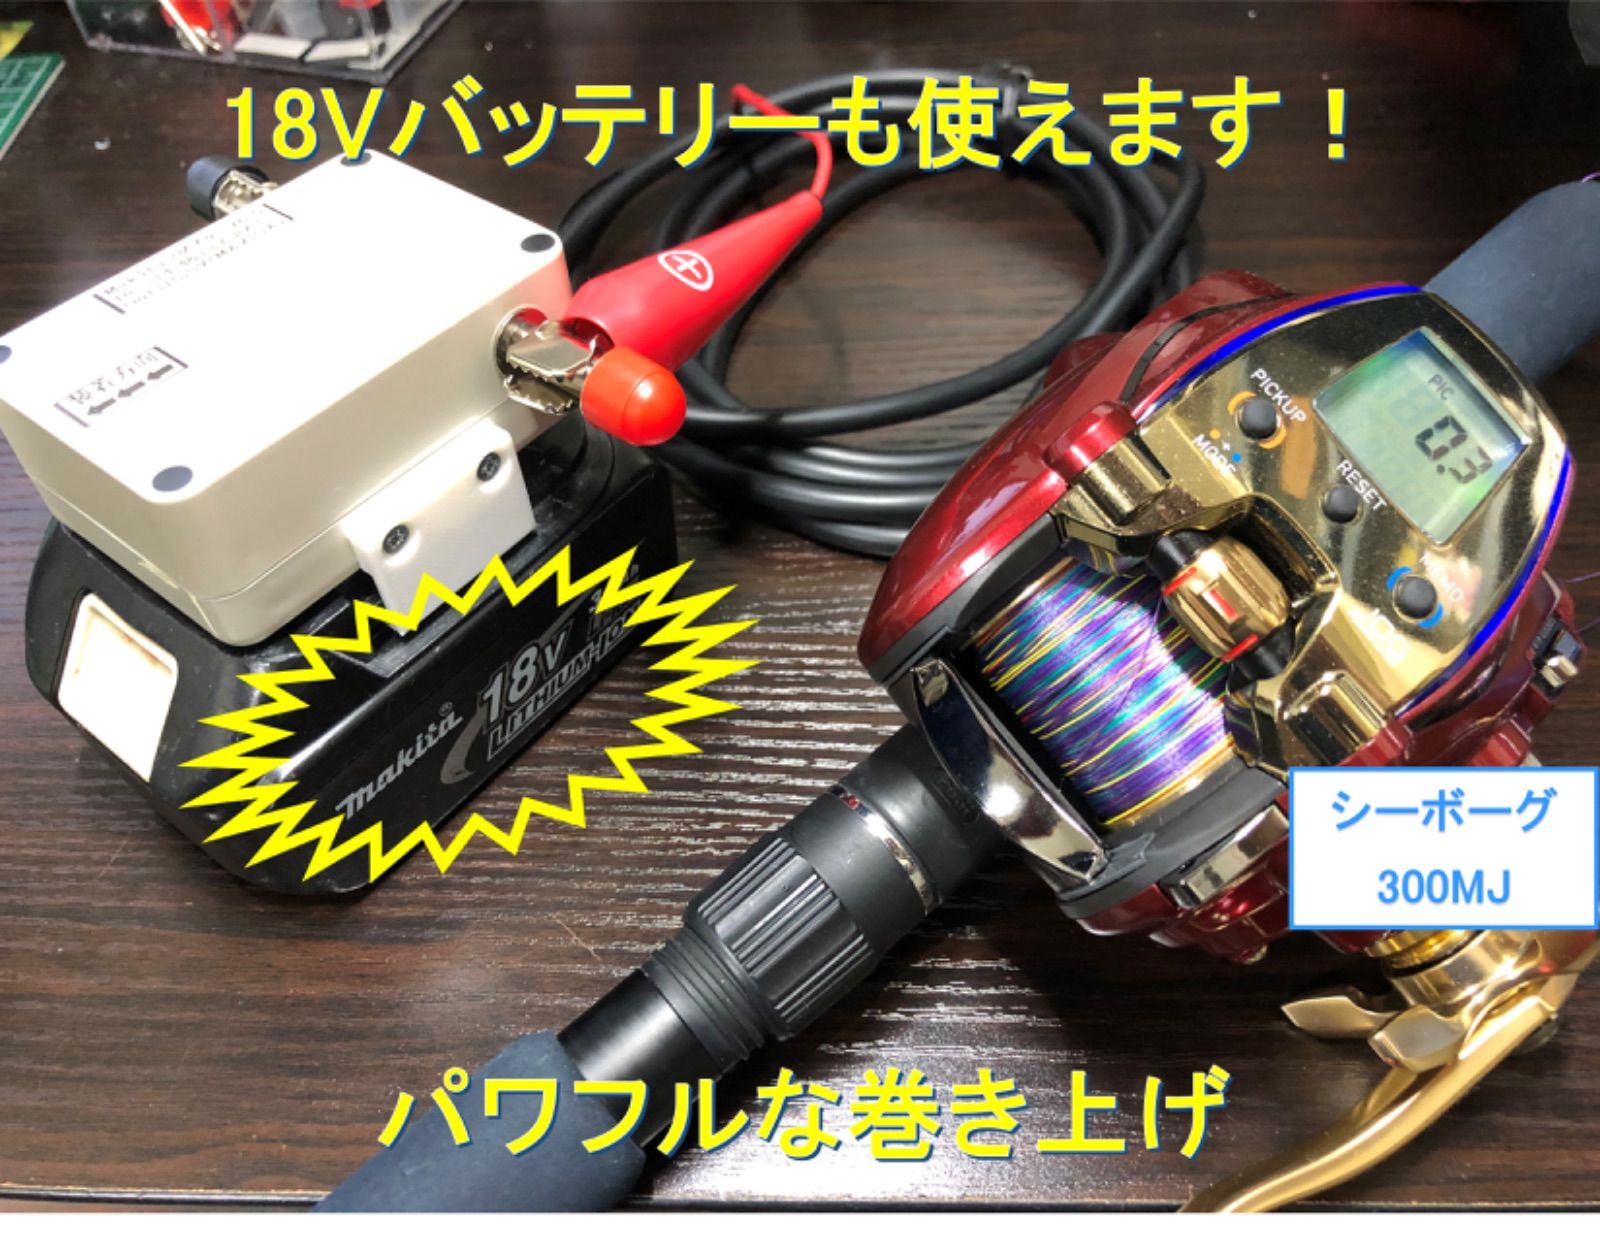 マキタ18V1.4Vバッテリーでダイワの電動リール用アダプター(ワニ口 